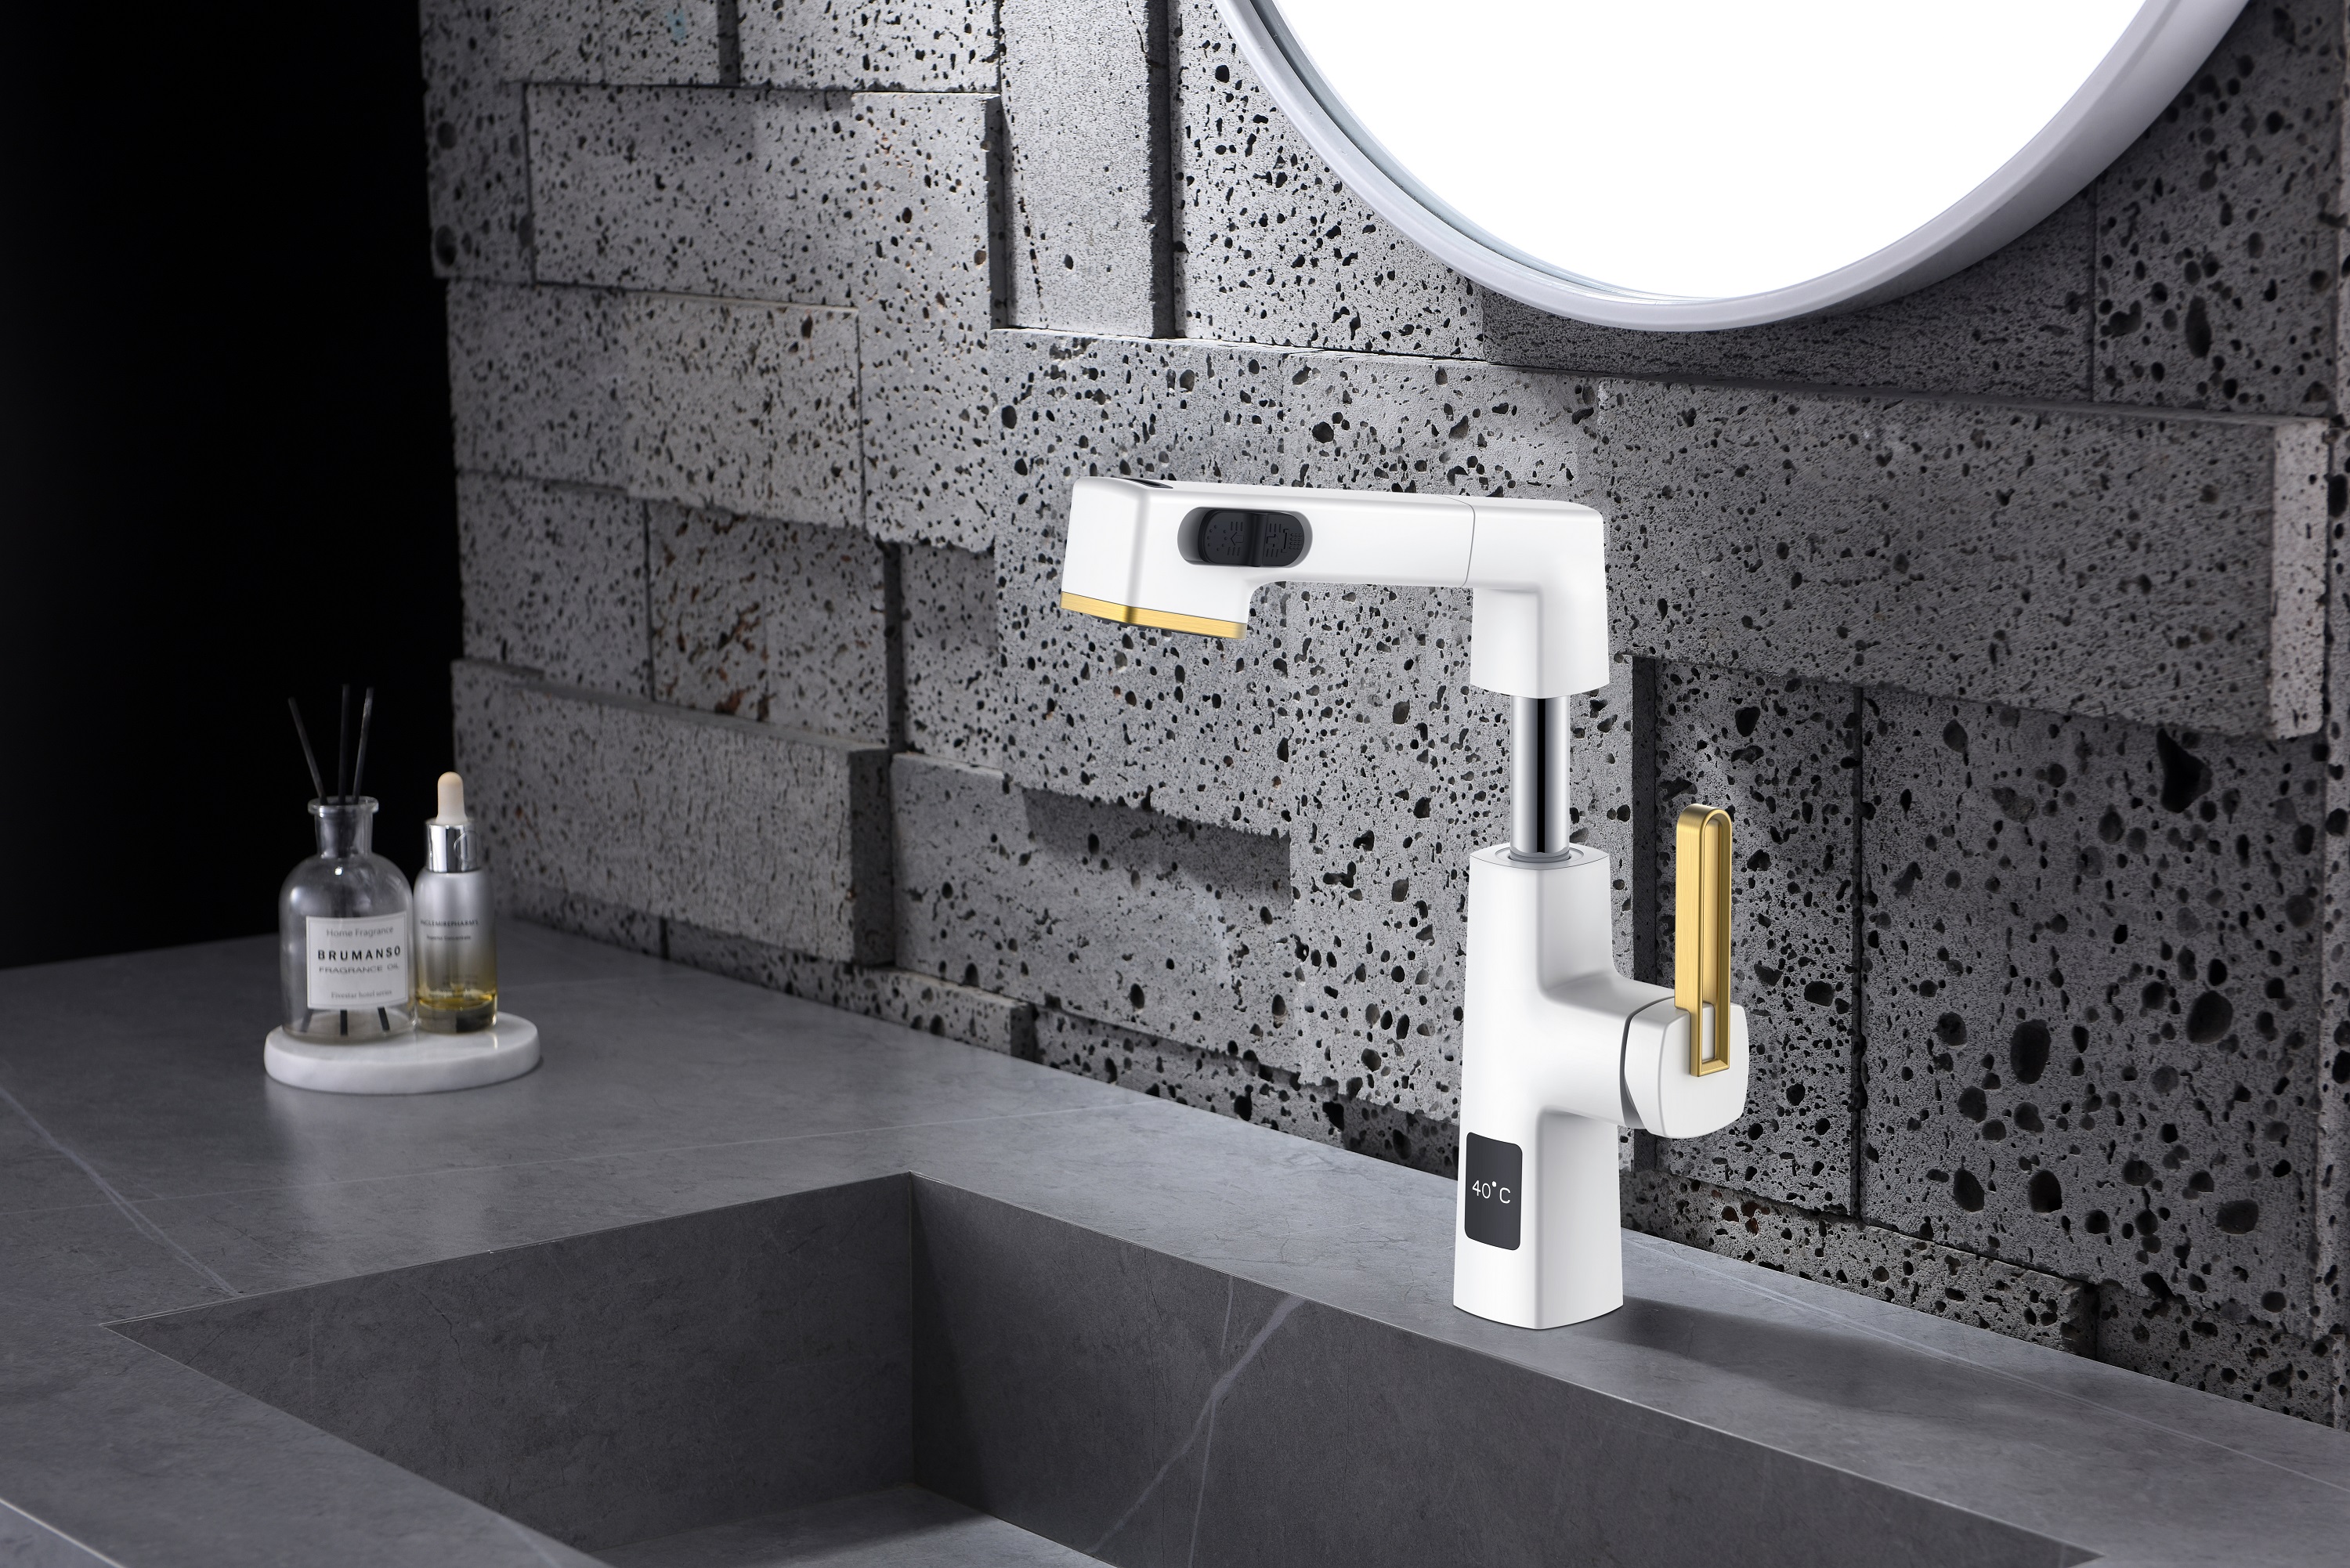  Hauteur réglable de robinet de salle de bains de conception unique blanche et d'or d'affichage de la température